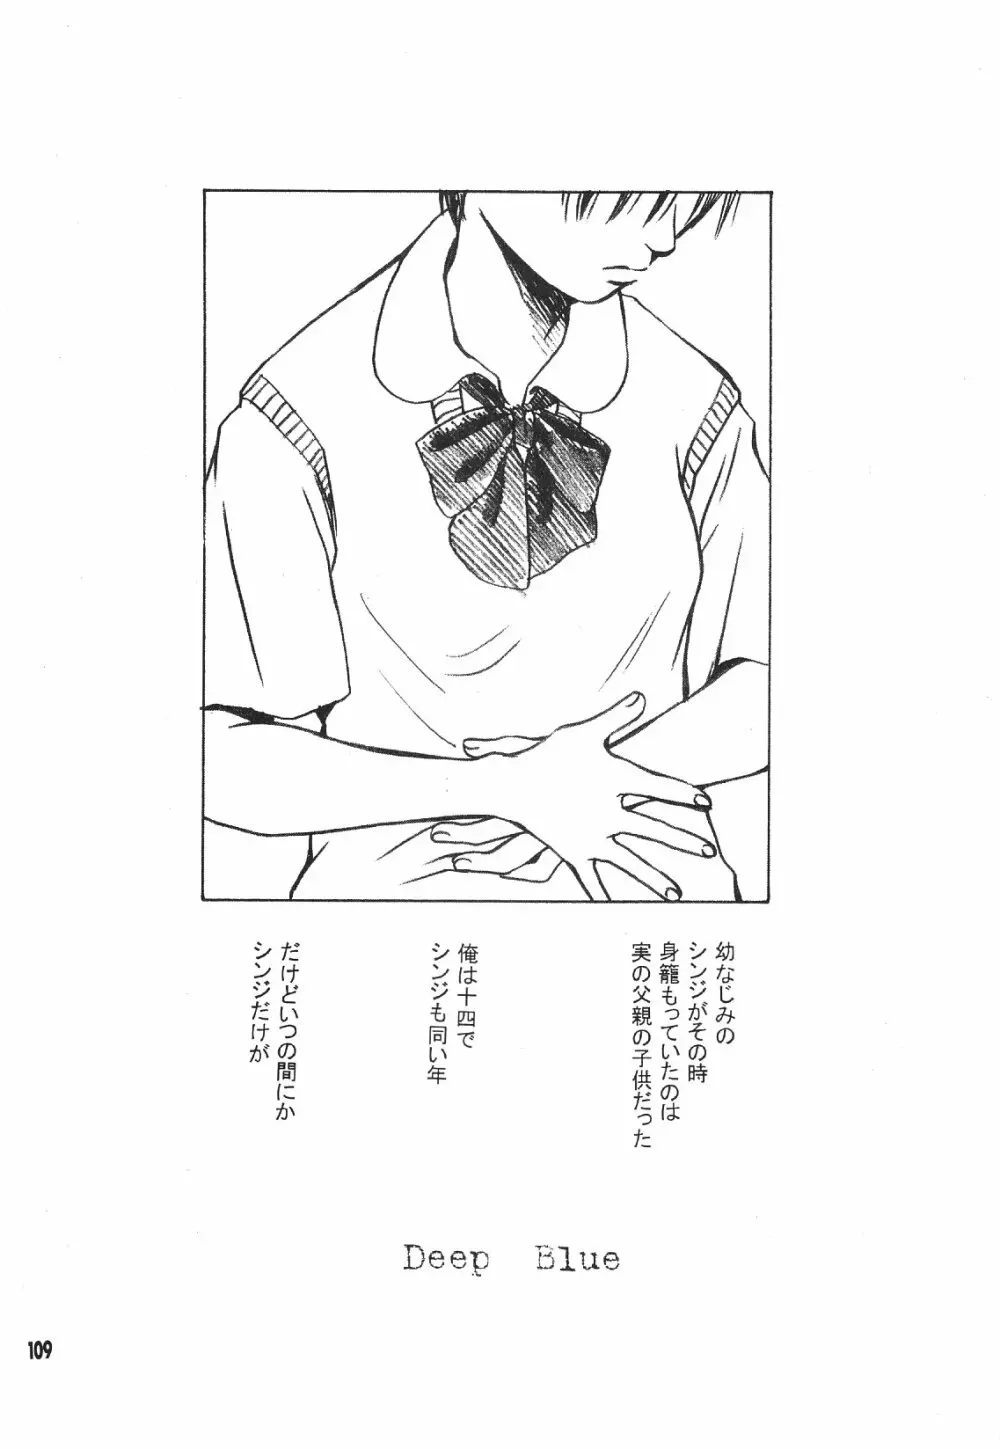 Maniac Juice 女シンジ再録集 '96-'99 - page109